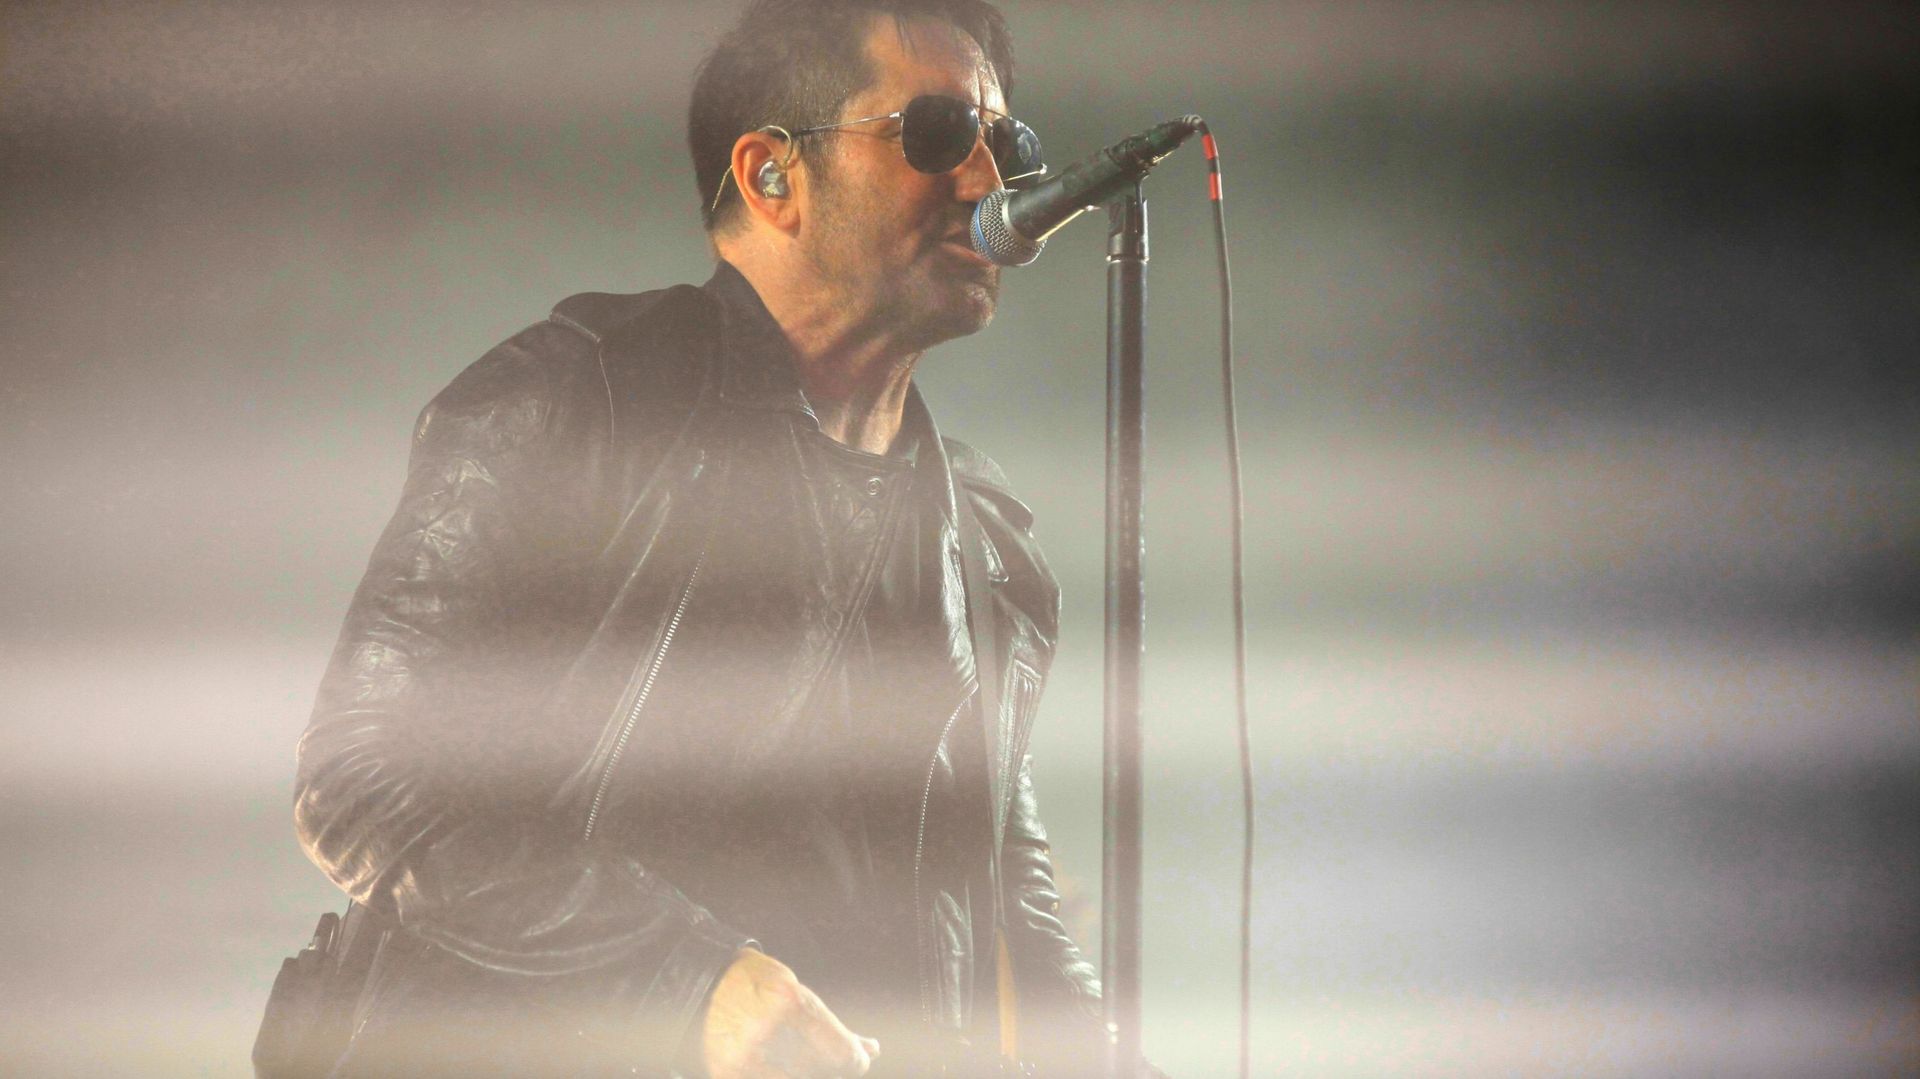 Deux nouveaux albums pour Nine Inch Nails